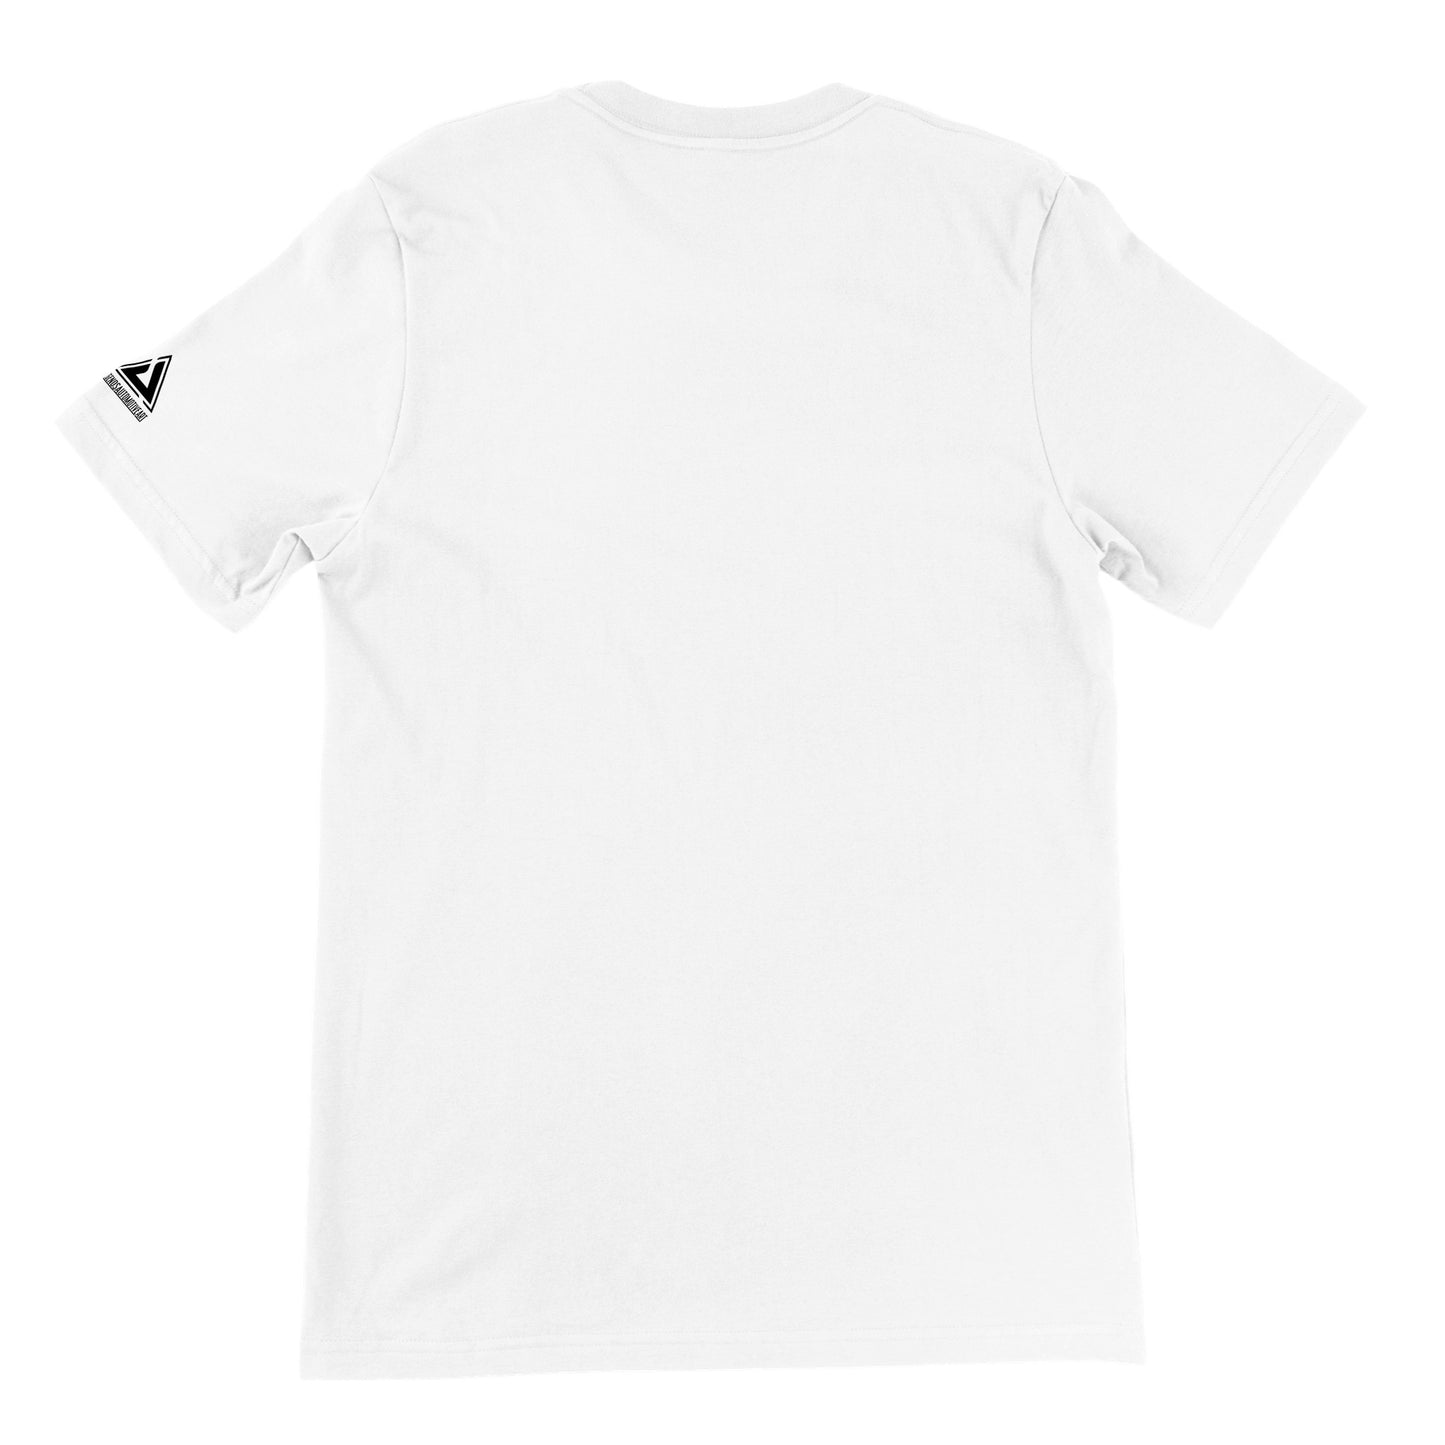 Mazda 787B - Premium Unisex T-shirt (White)